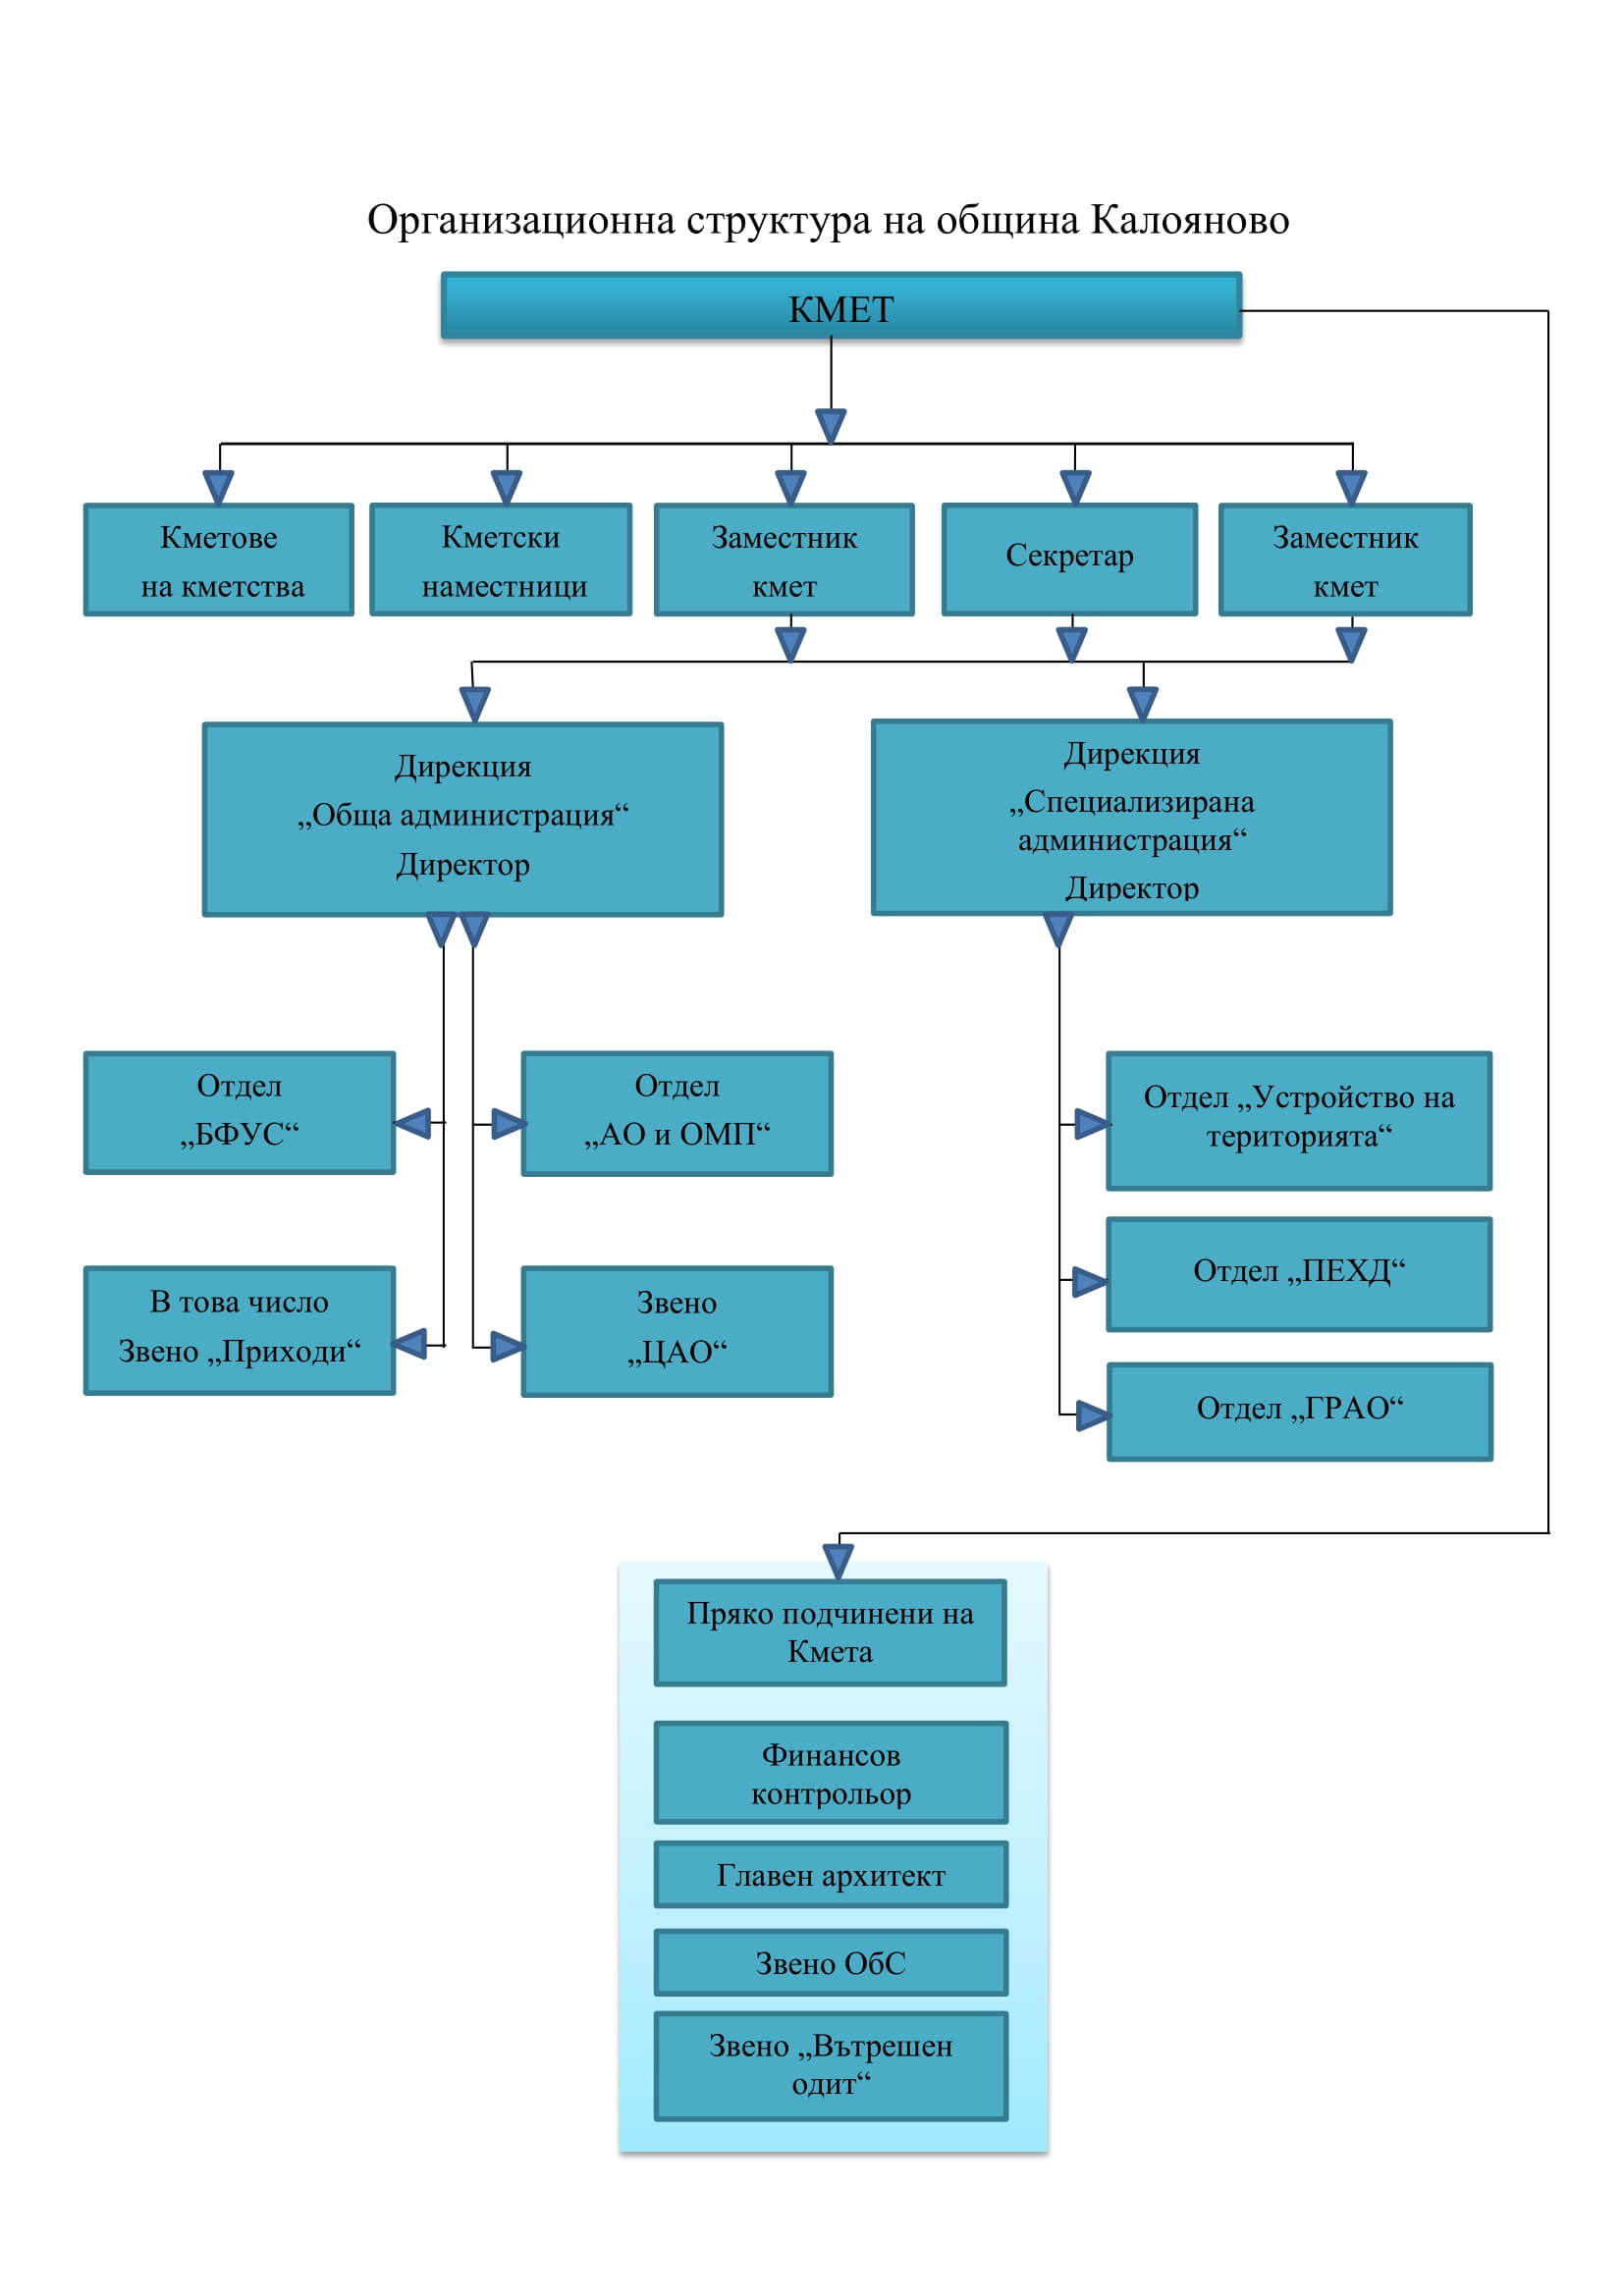 графика на организационната структура на общината